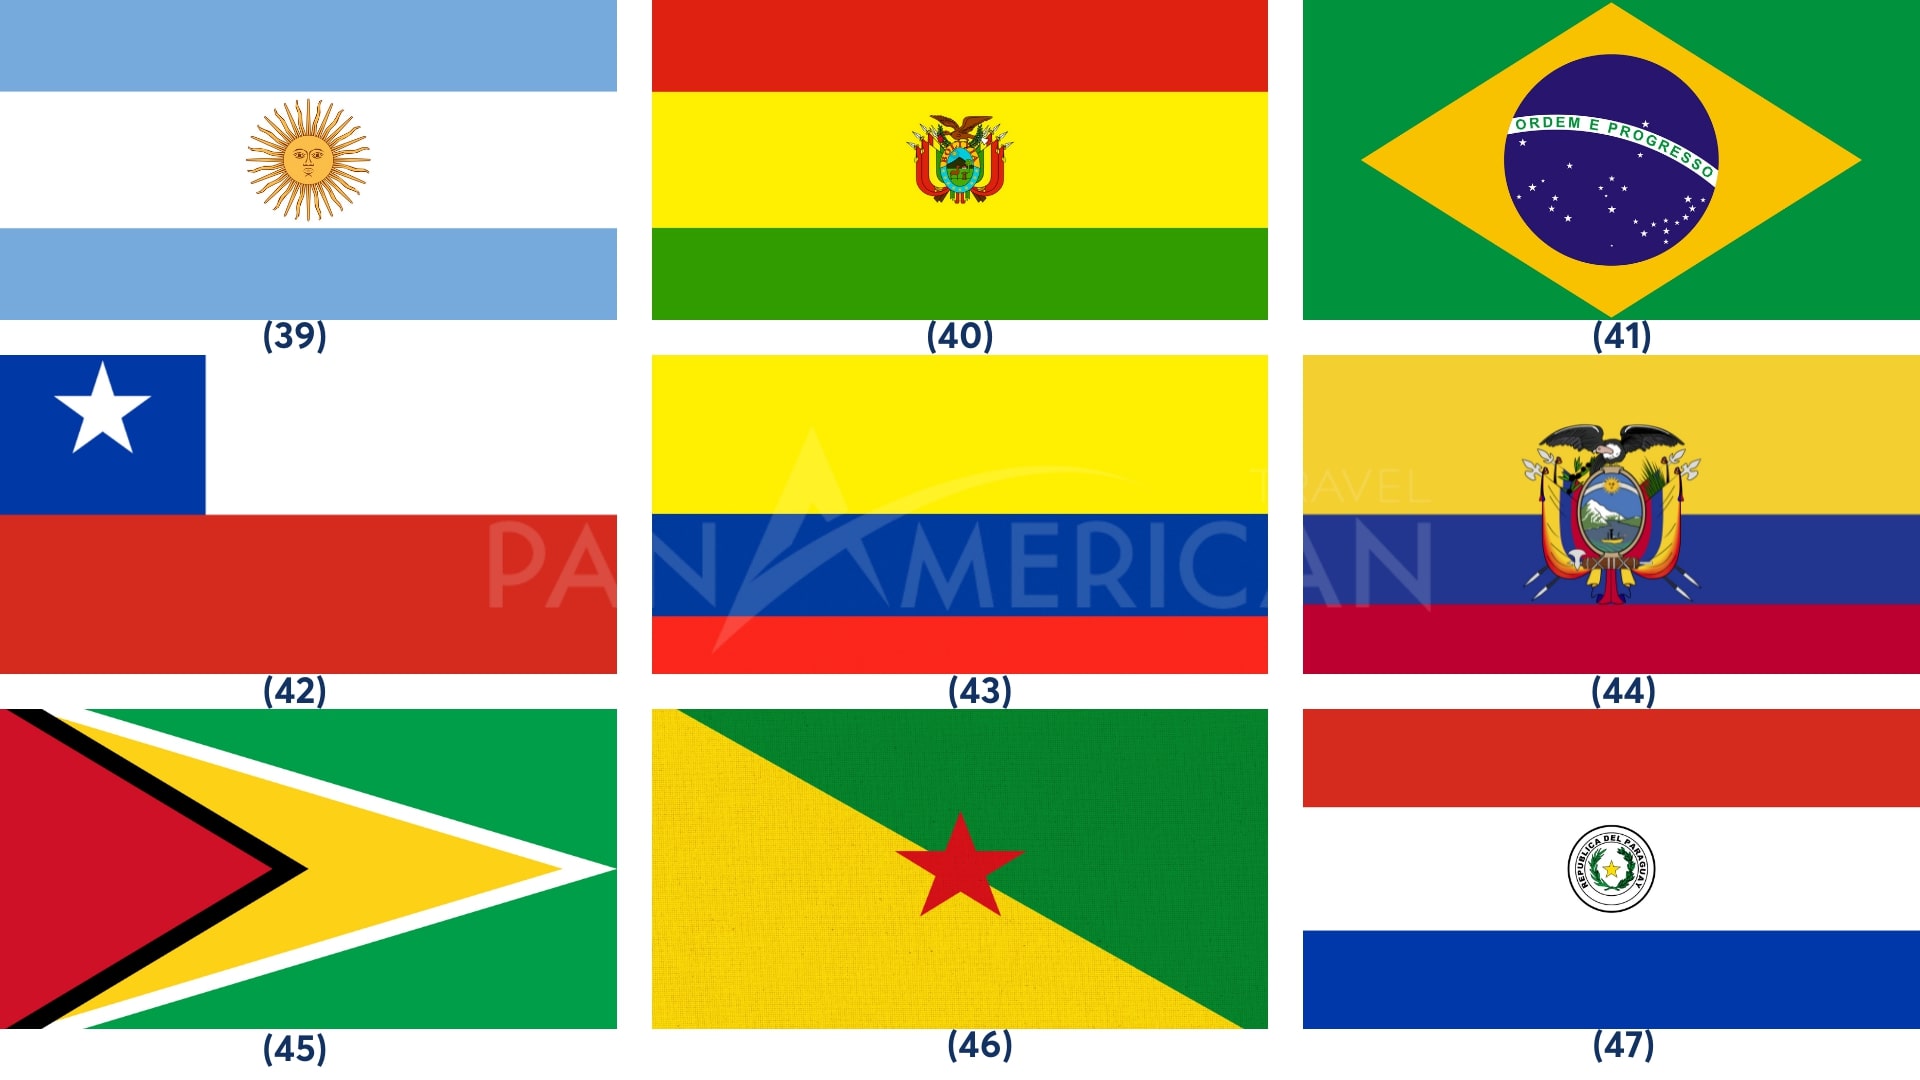 PANVISA.COM.VN - Hình ảnh quốc kỳ các nước châu Mỹ: Với PANVISA, bạn sẽ thấy hình ảnh đẹp và rõ ràng của các lá cờ quốc gia trên khắp châu Mỹ. Từ Canada đến Chile, bạn sẽ được làm quen với biểu tượng của mỗi quốc gia và hiểu thêm về lịch sử và văn hóa của họ.